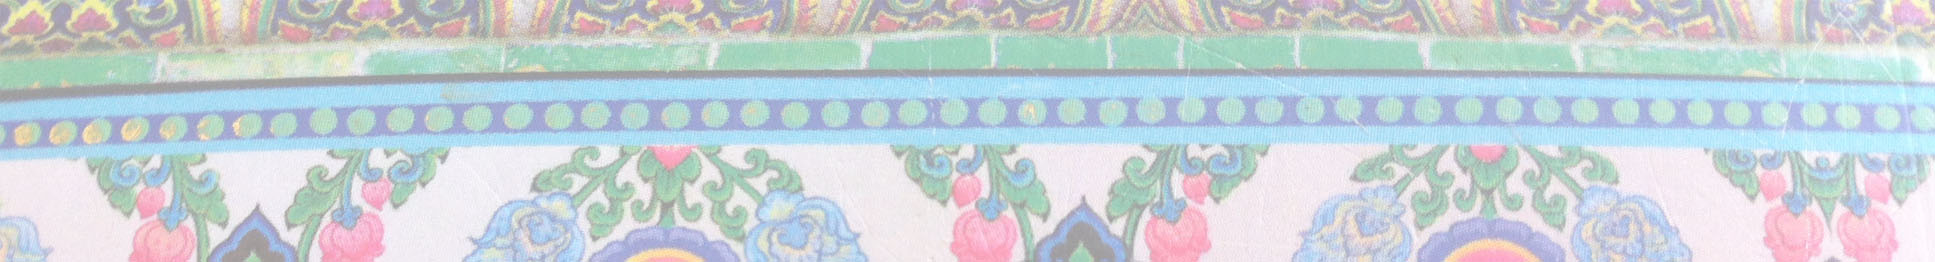 Verschillende lichtgekleurde balken met ornamenten in groen, roze, blauw